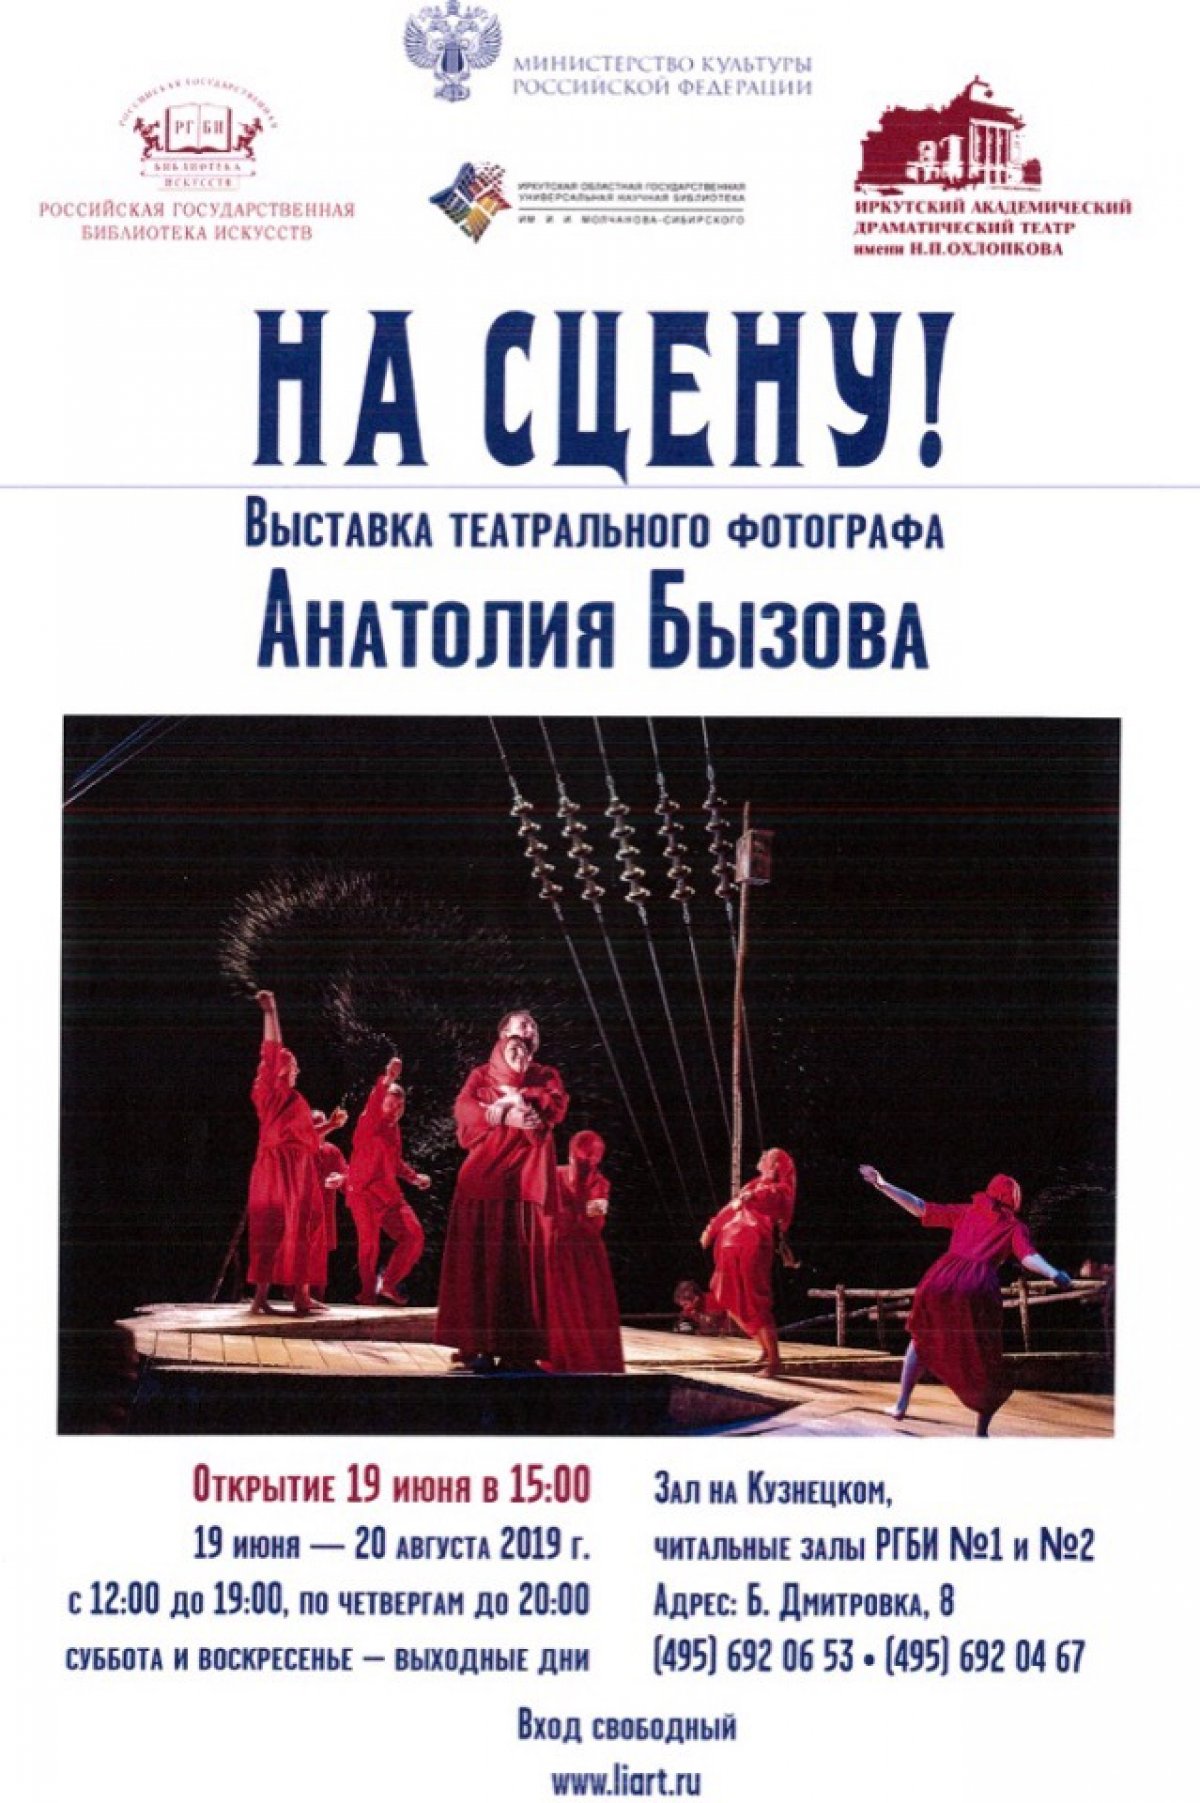 РГБИ приглашает вас на открытие выставки театрального фотографа Анатолия Бызова!